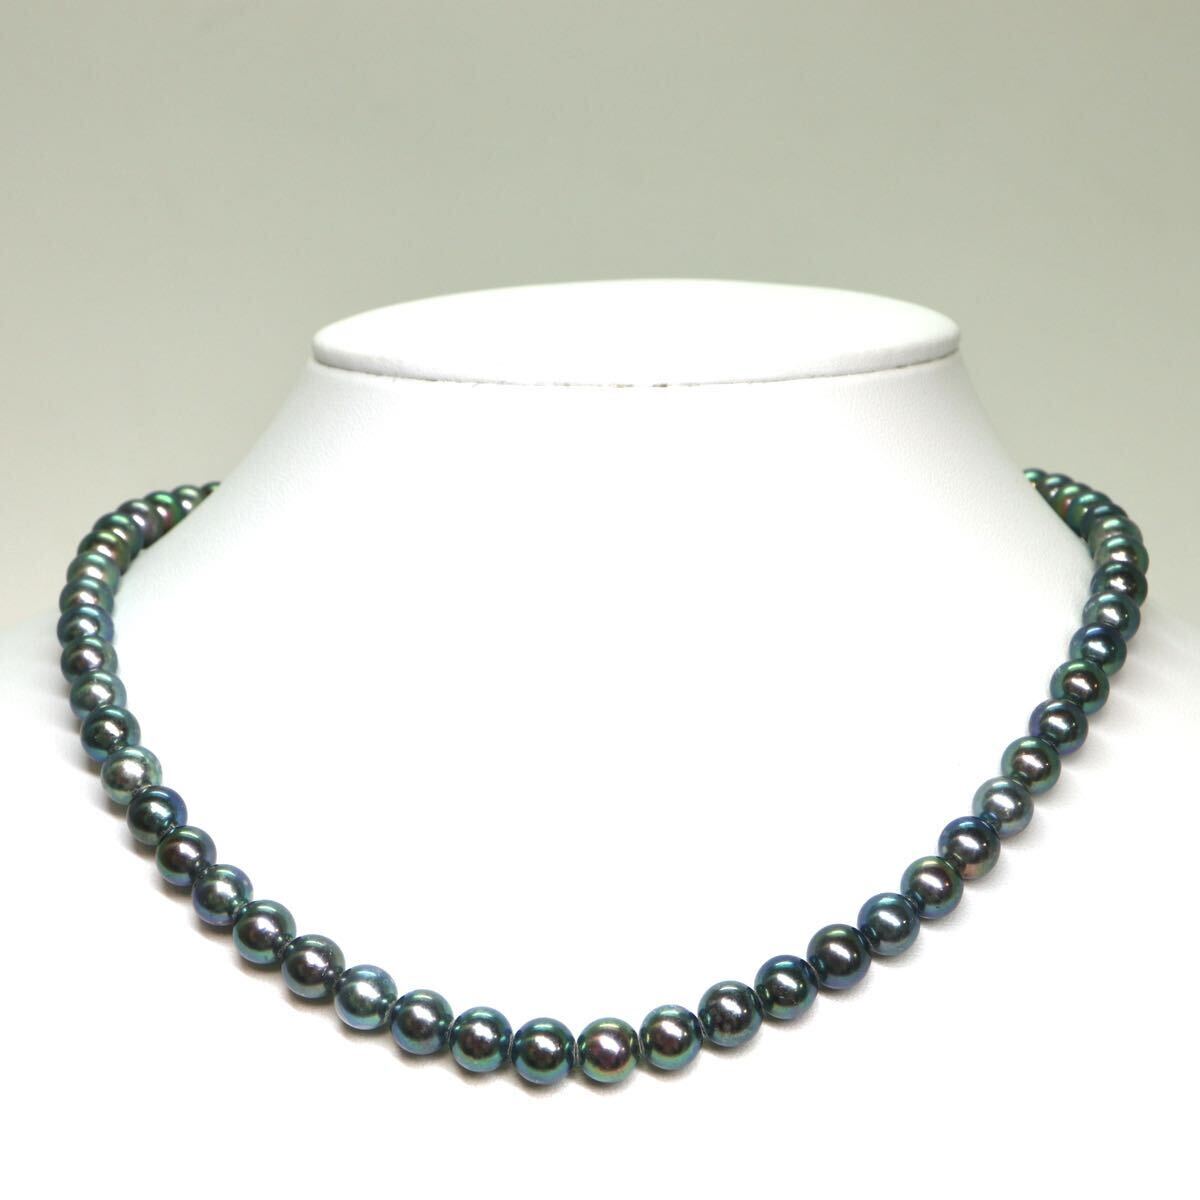 《アコヤ本真珠ネックレス》A 約6.5-7.0mm珠 29.9g 約42cm pearl necklace ジュエリー jewelry DA0/DA5の画像2